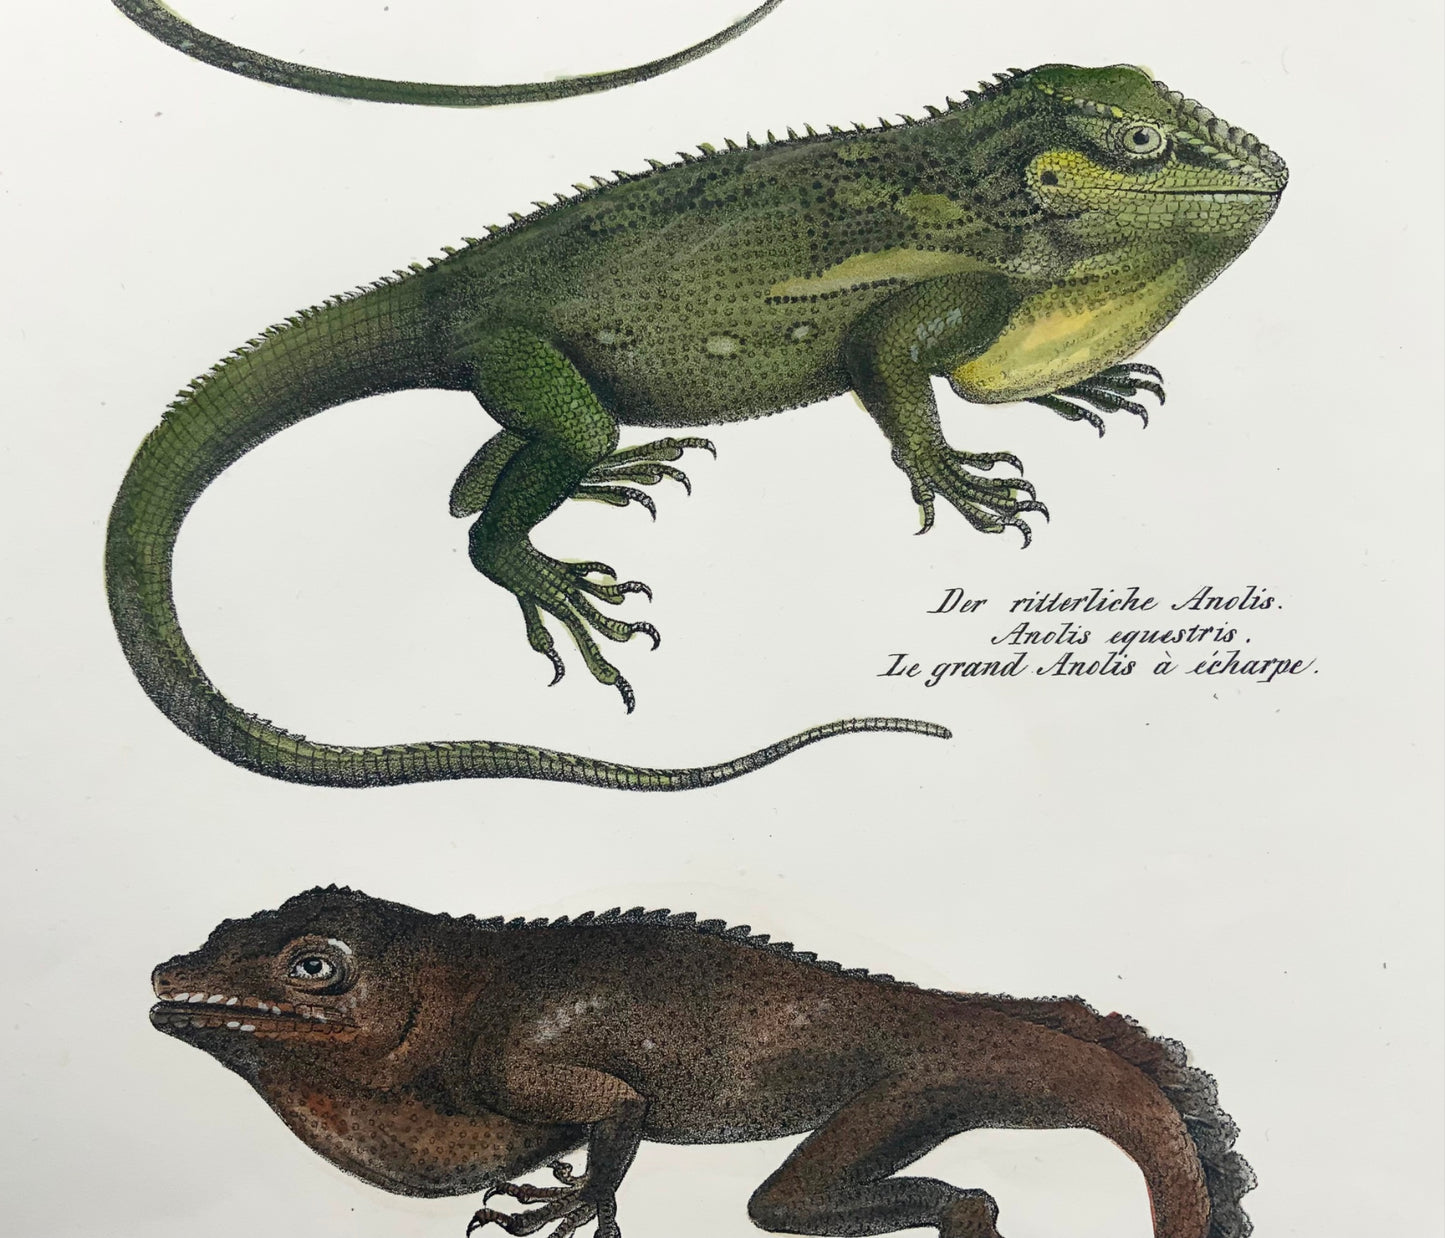 1833 Schinz (b1777) Anolis Lizards, litografia in pietra colorata a mano, rettili